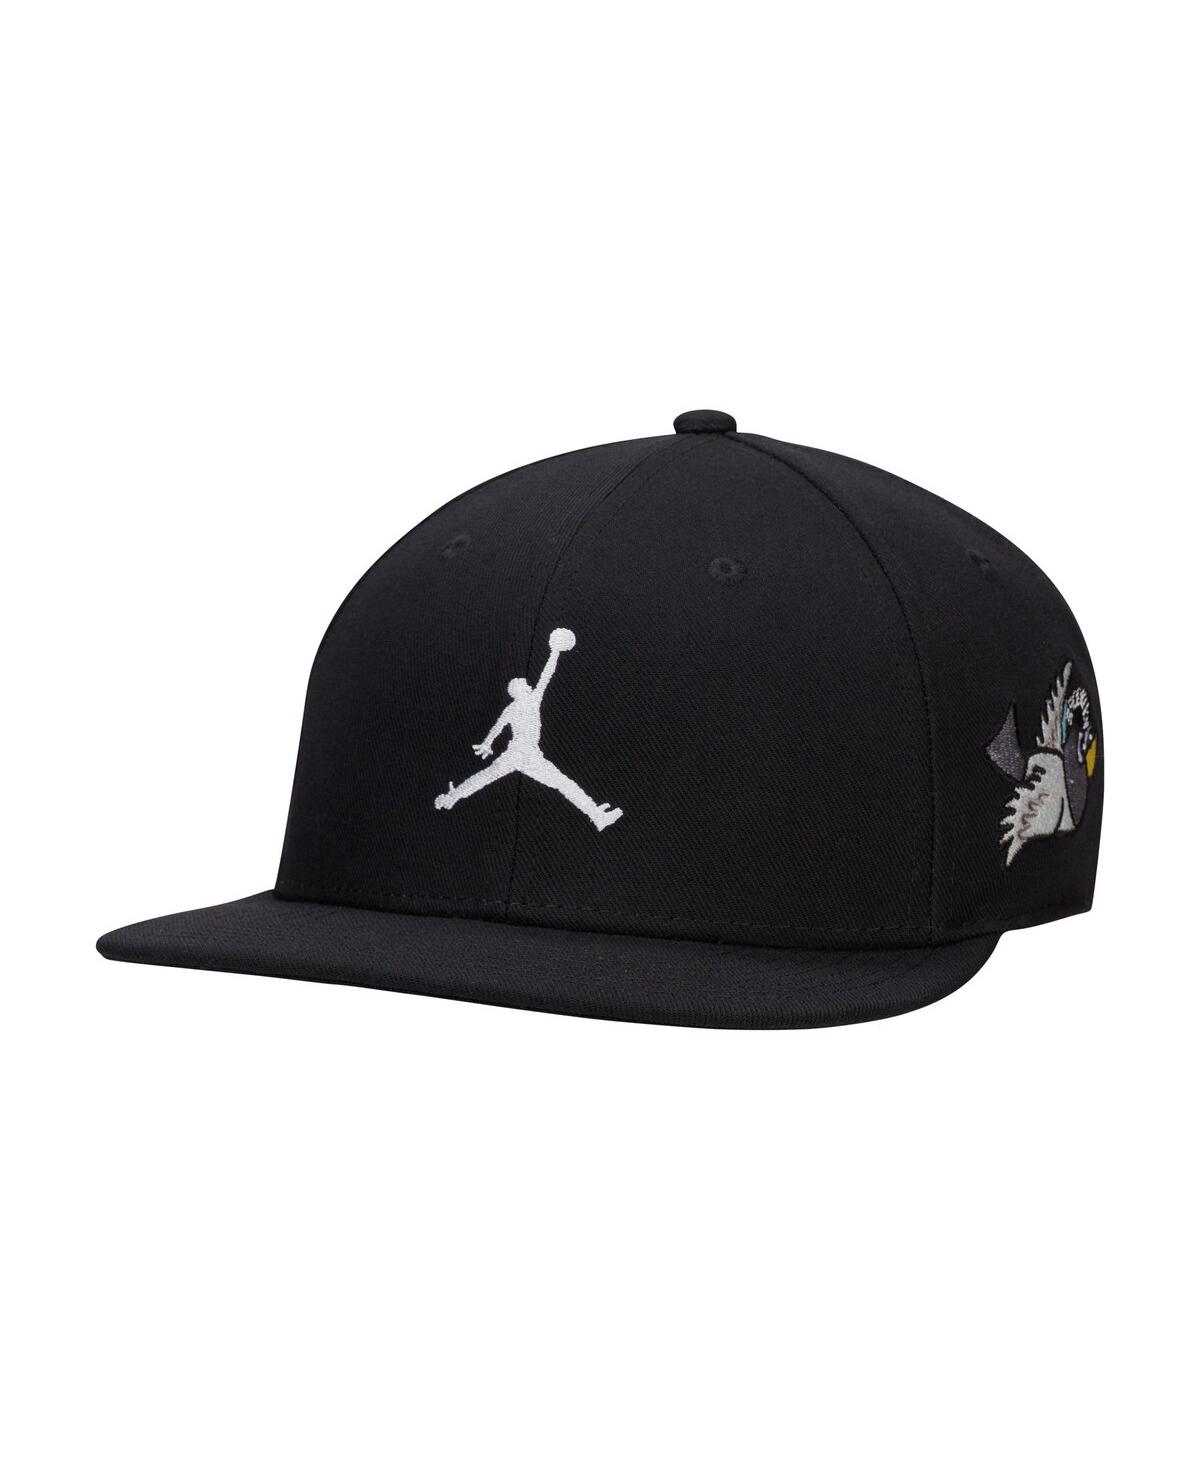 Jordan Men's  Brand Black Member Pro Snapback Hat